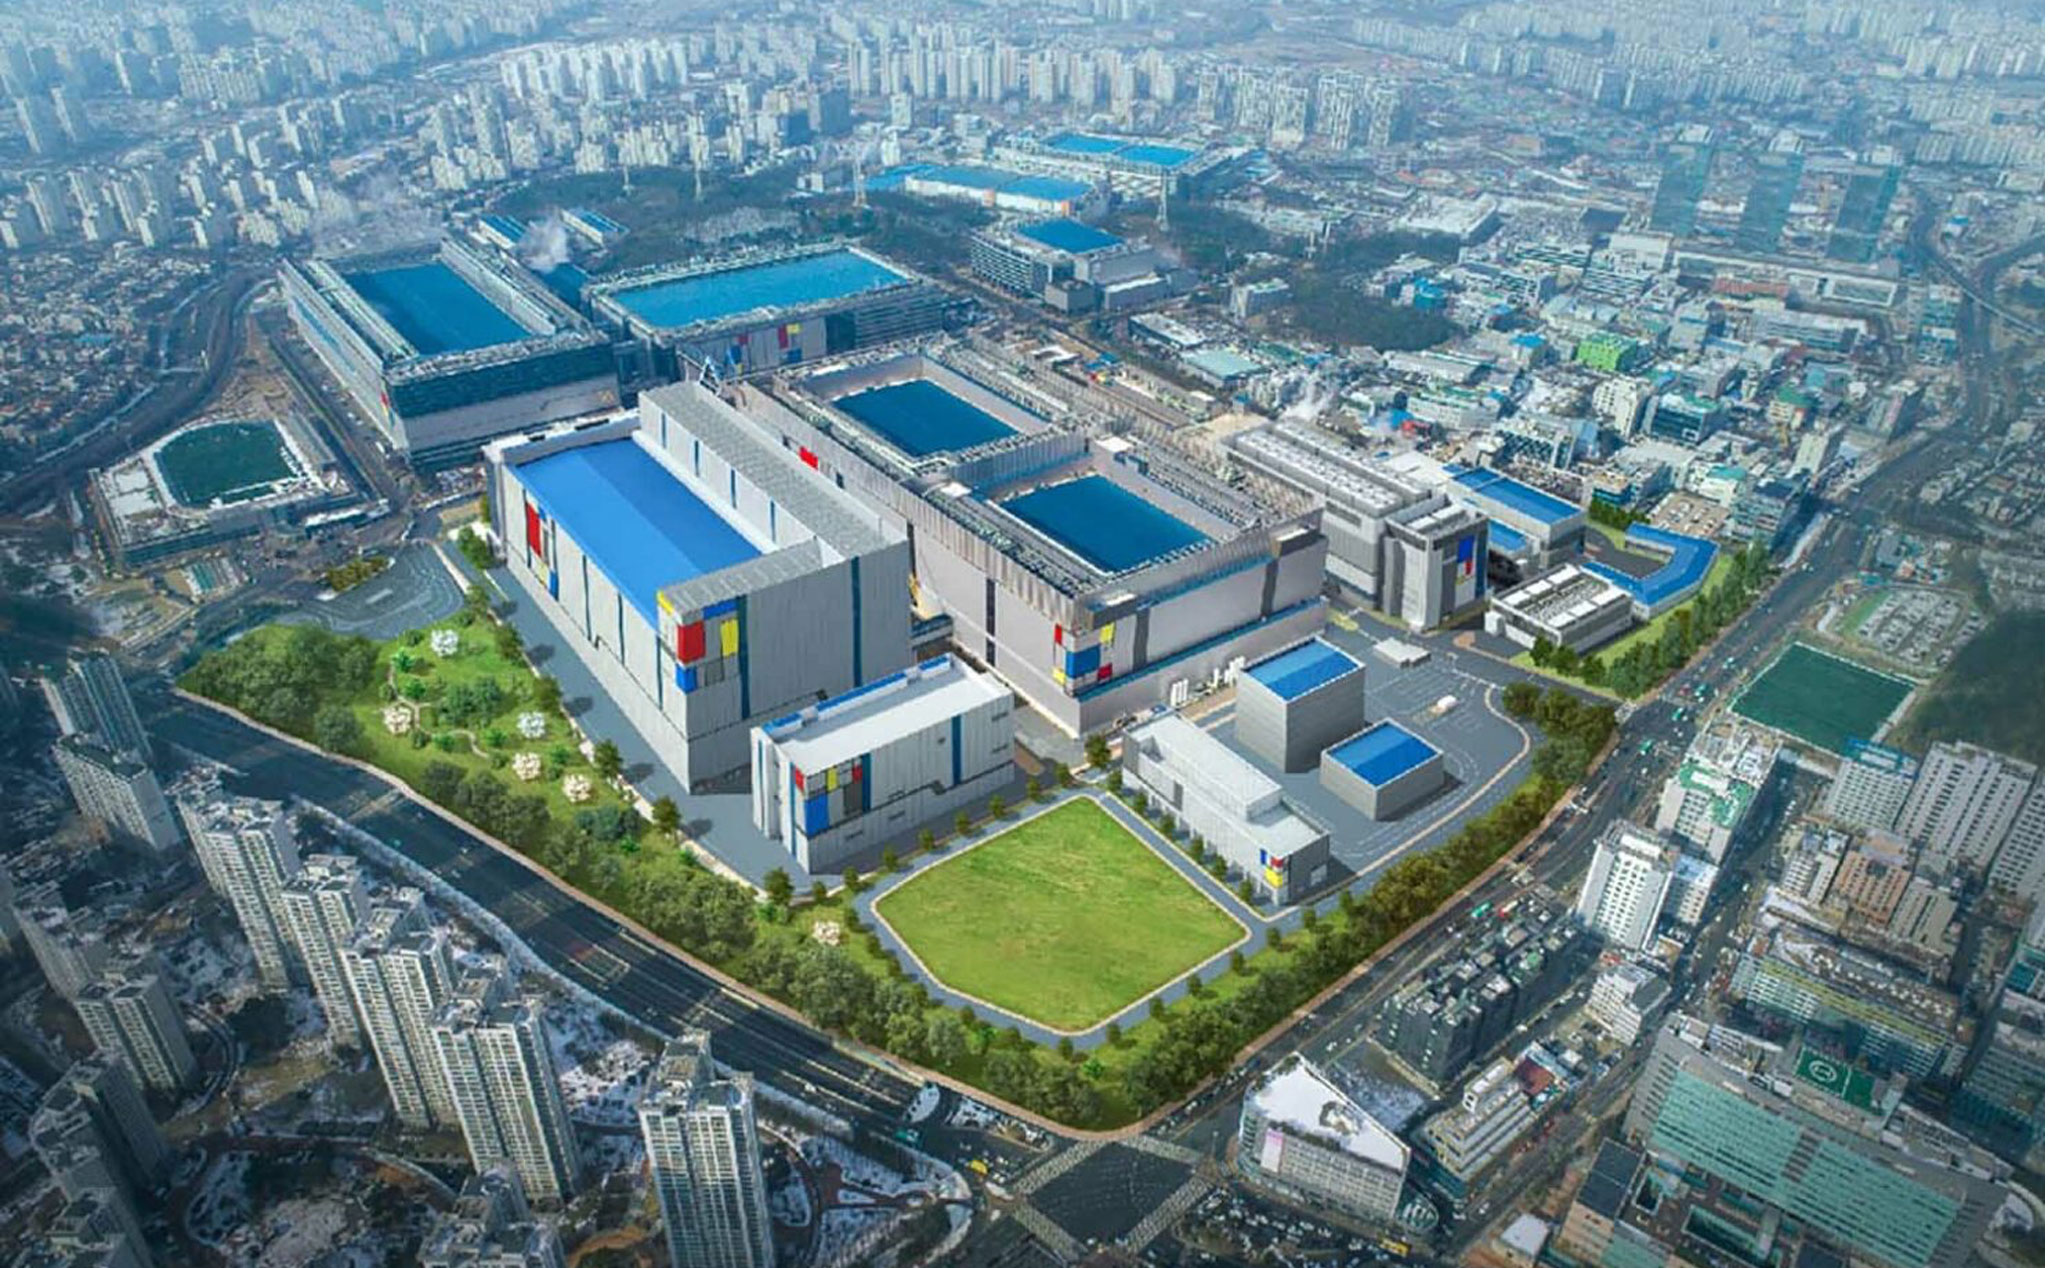 Samsung sẽ đầu tư 10 tỷ đô la cho cơ sở sản xuất chip 3nm ở Texas, tham vọng dẫn đầu lĩnh vực chip